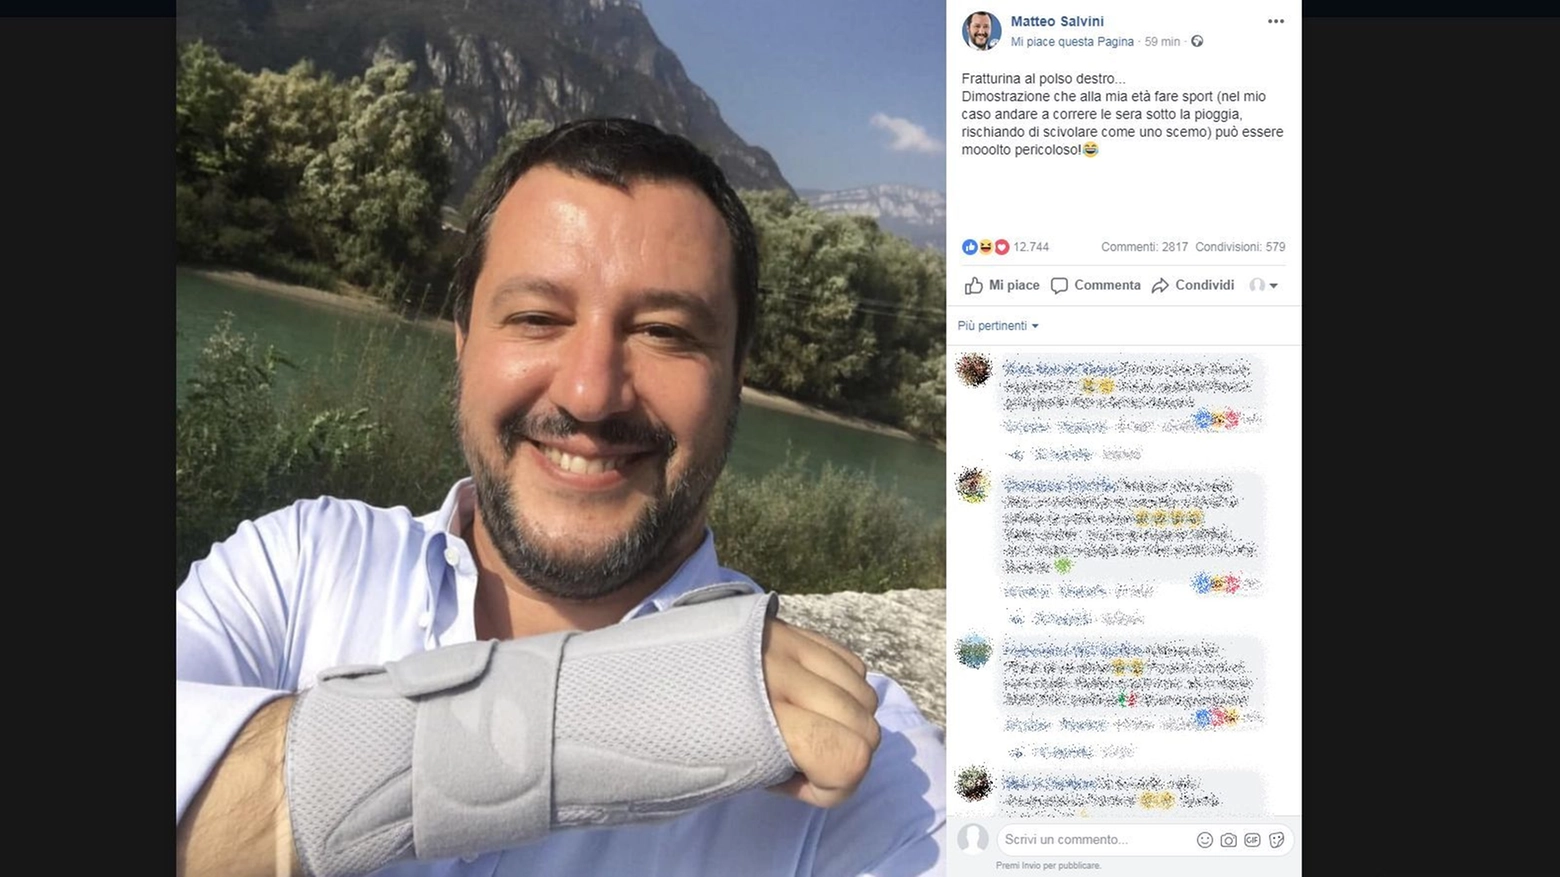 Matteo Salvini con il tutore al polso su Facebook